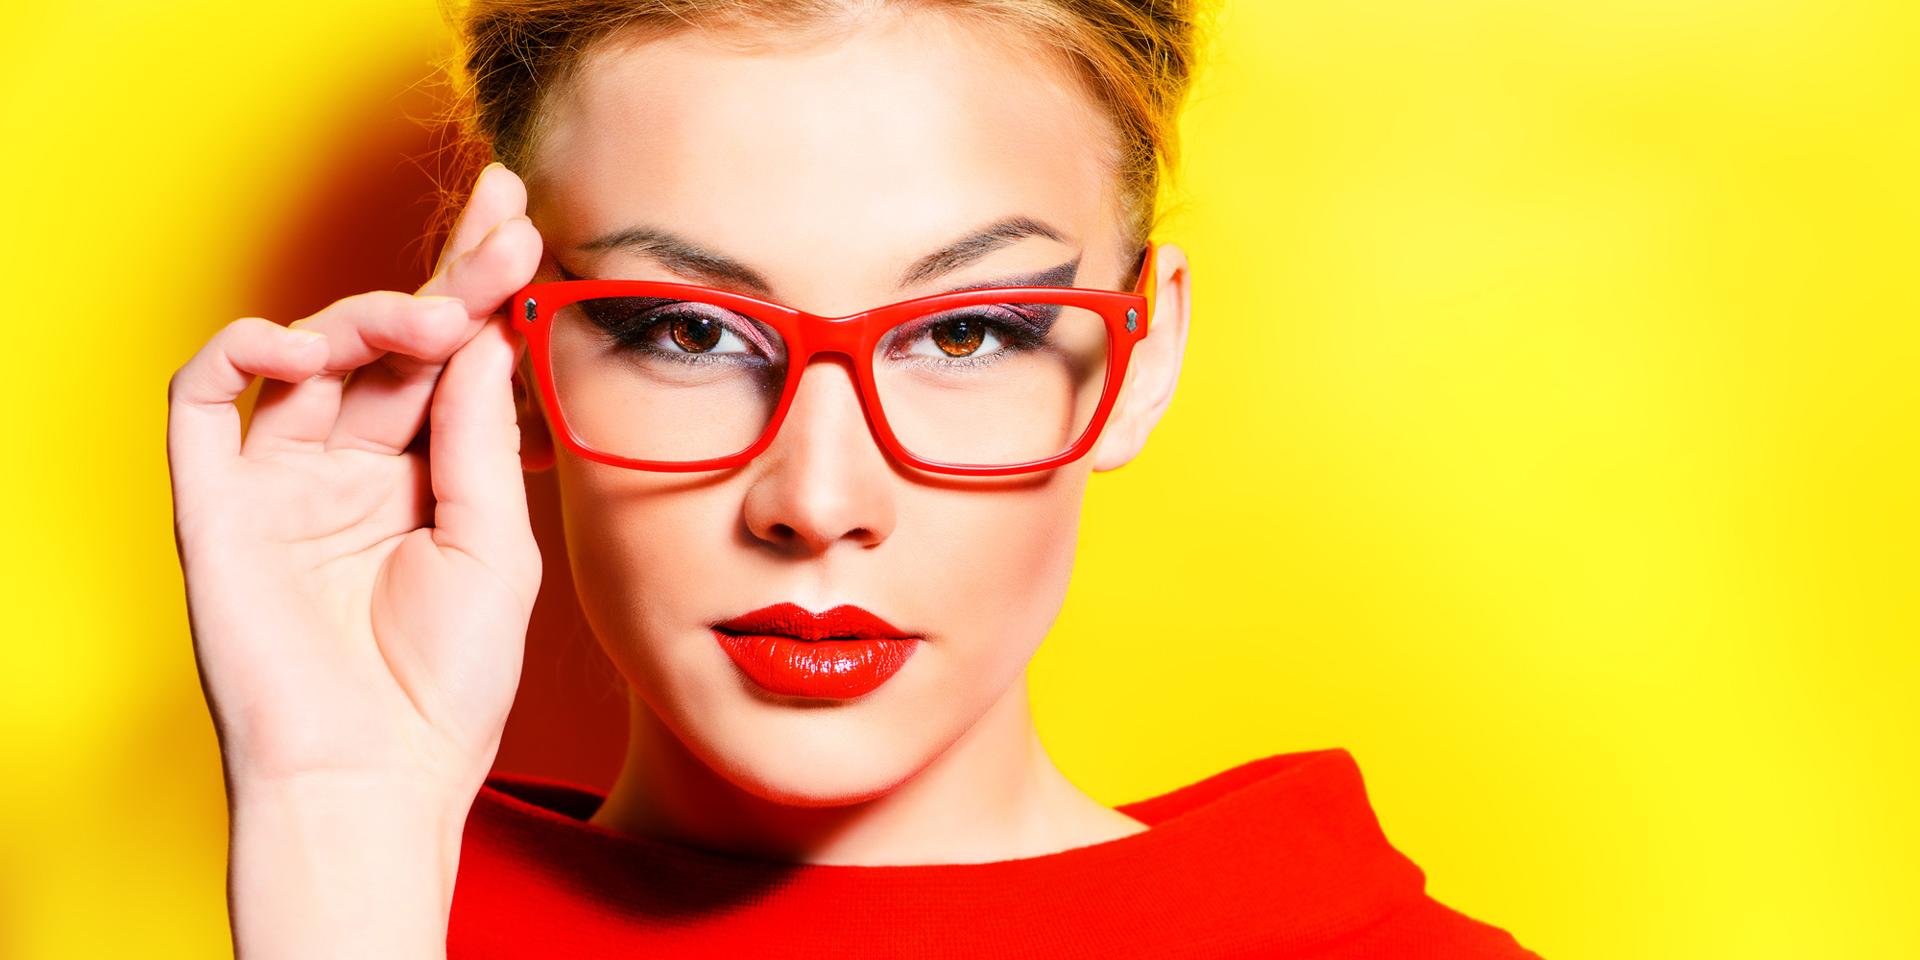 안경이나 콘택트 렌즈를 착용하는 여성을 위한 메이크업 팁